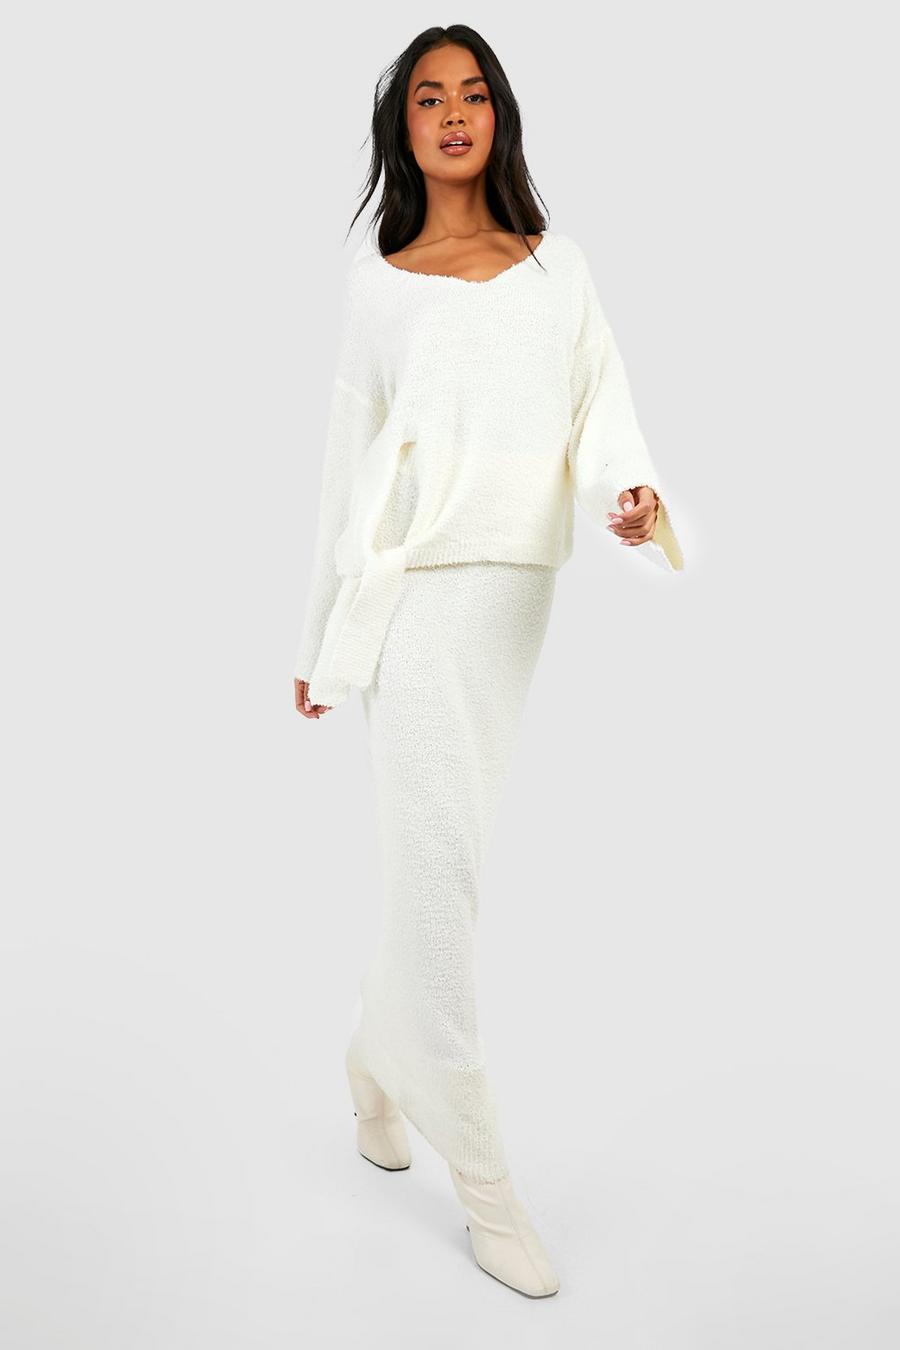 Ensemble premium texturé avec pull ample et jupe longue, Ivory white